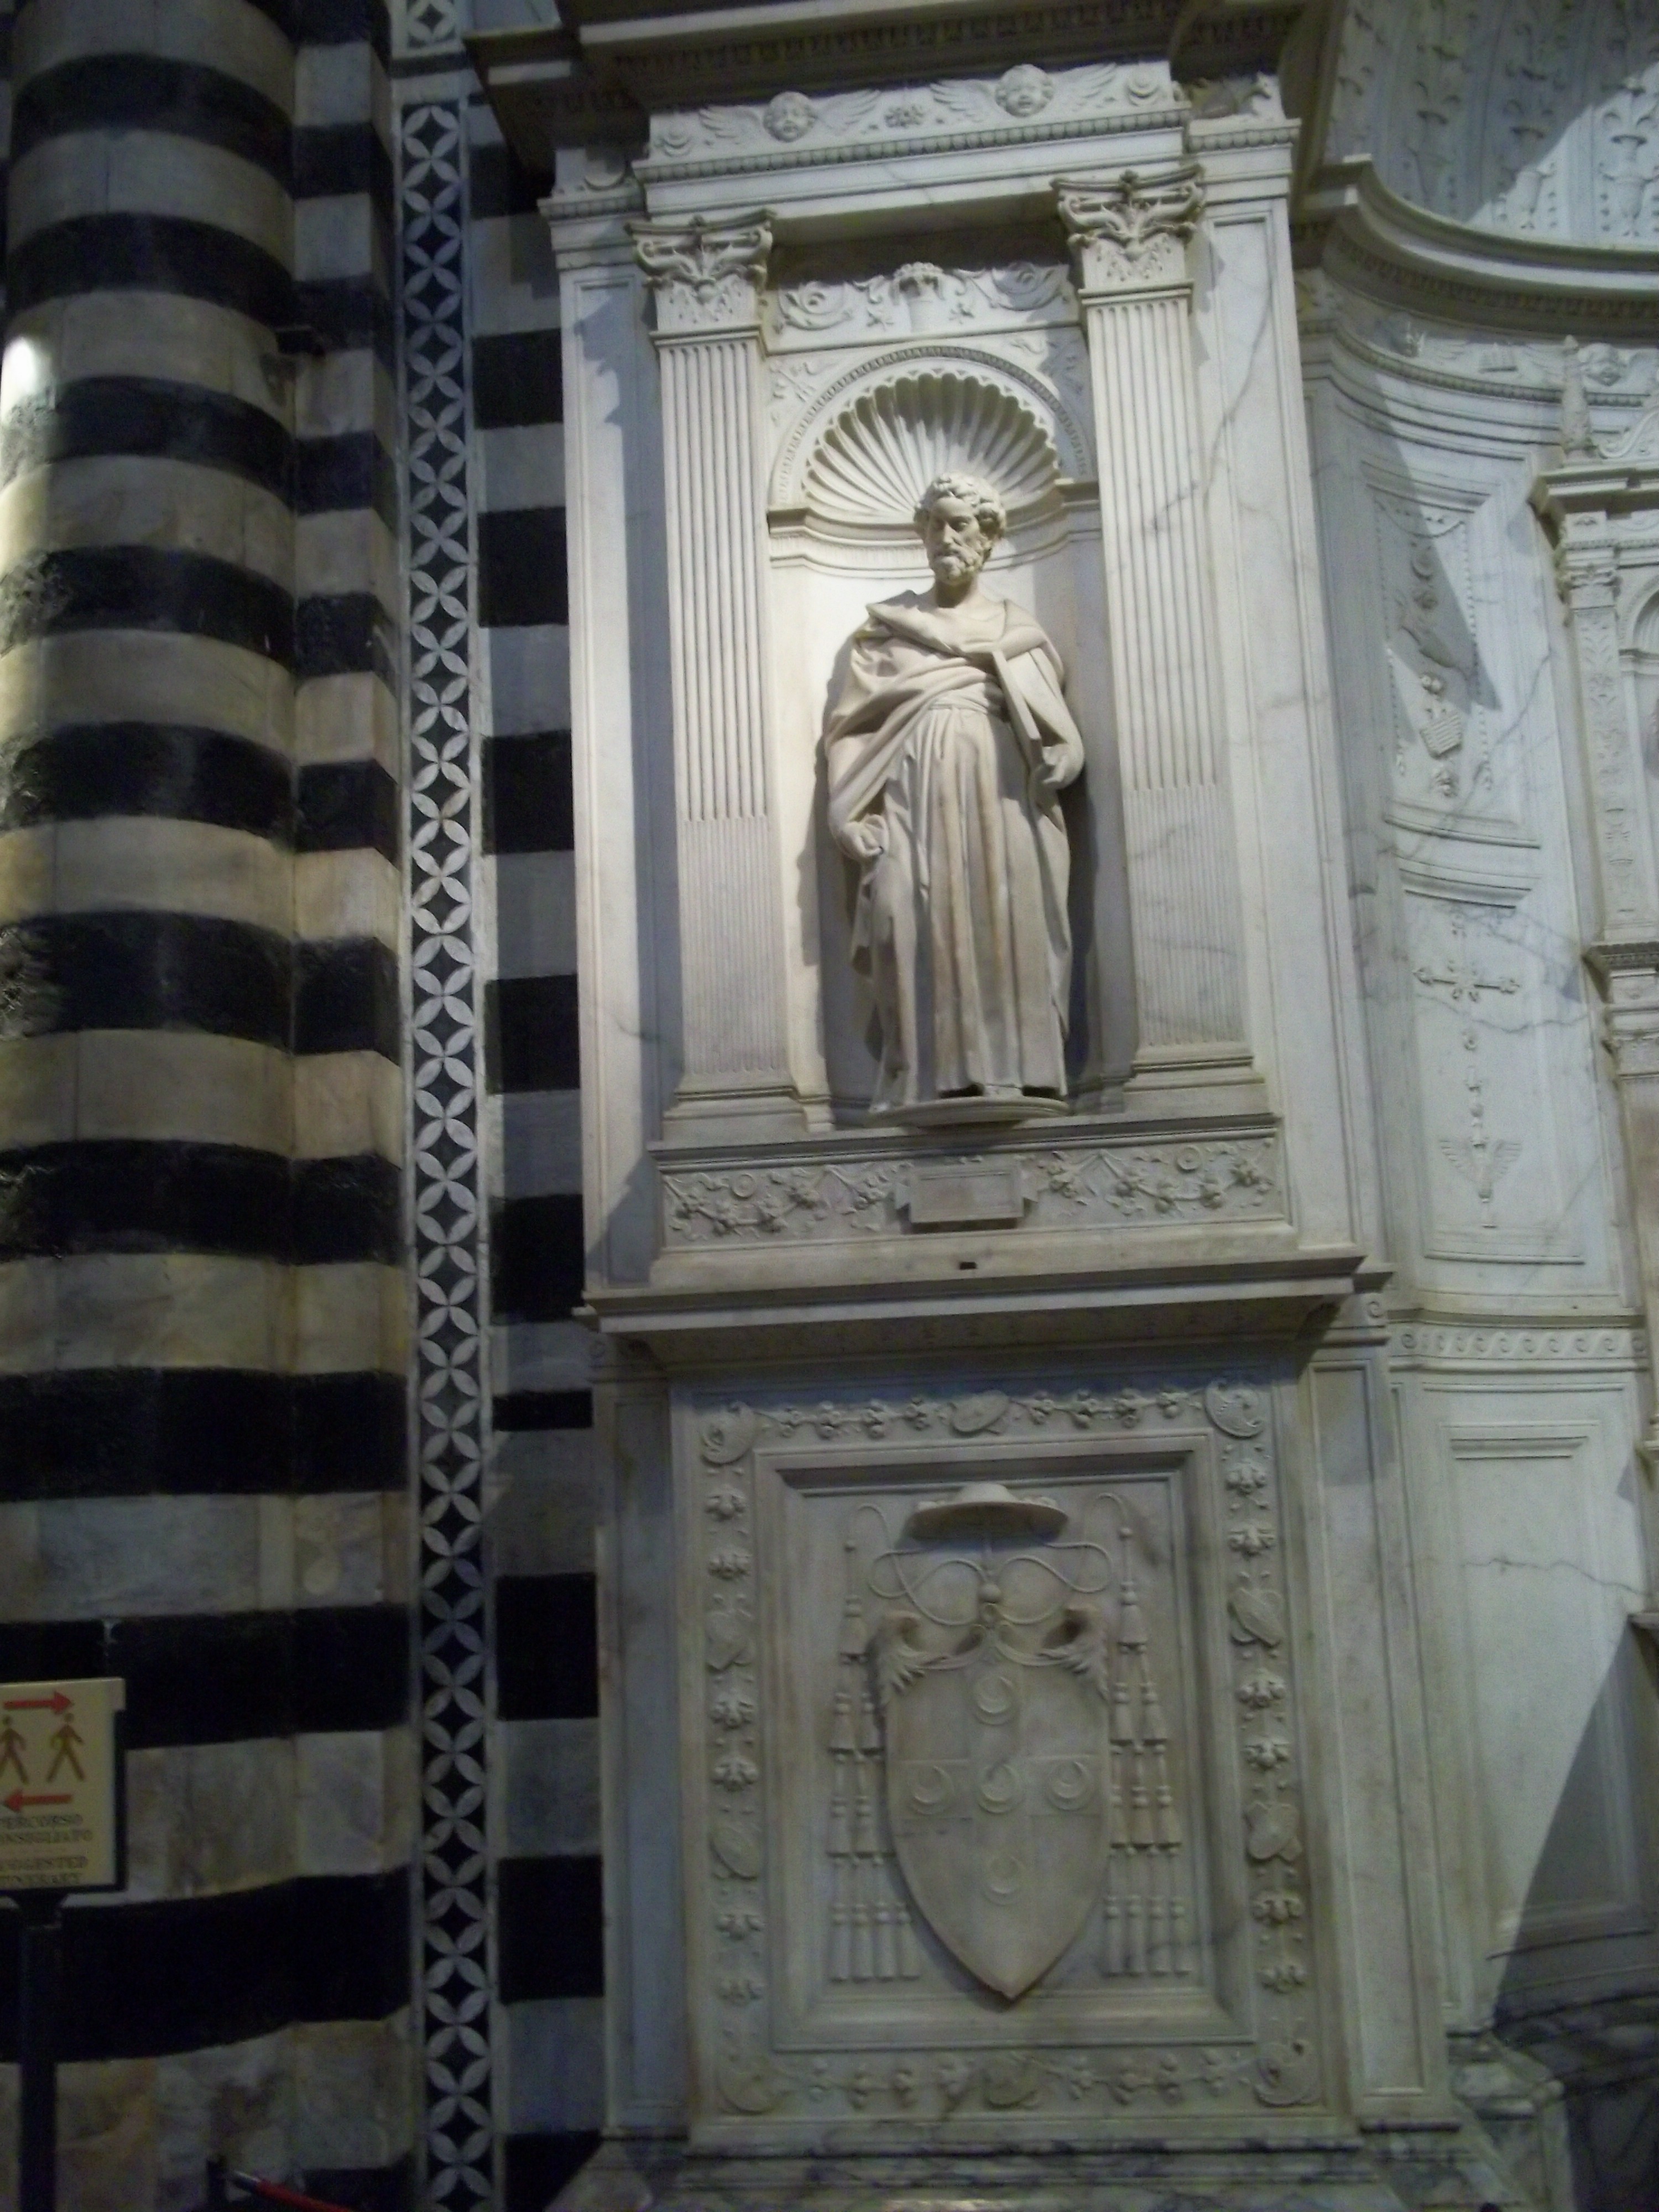 Siena Duomo interior